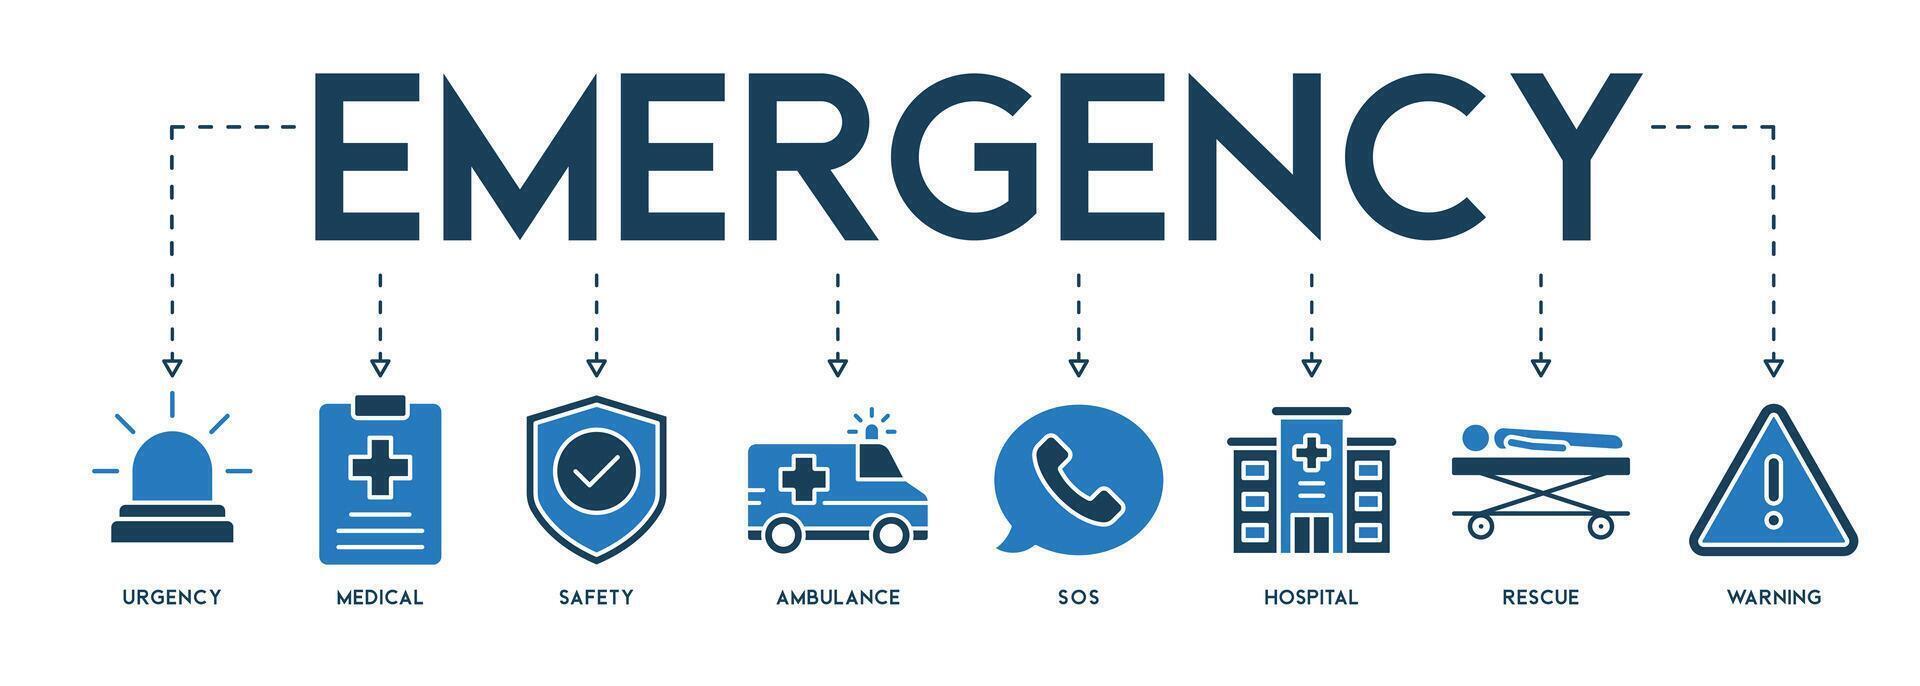 bandera de emergencia vector ilustración diseño concepto con el icono de urgencia medicos la seguridad ambulancia llamada de socorro hospital rescate y advertencia